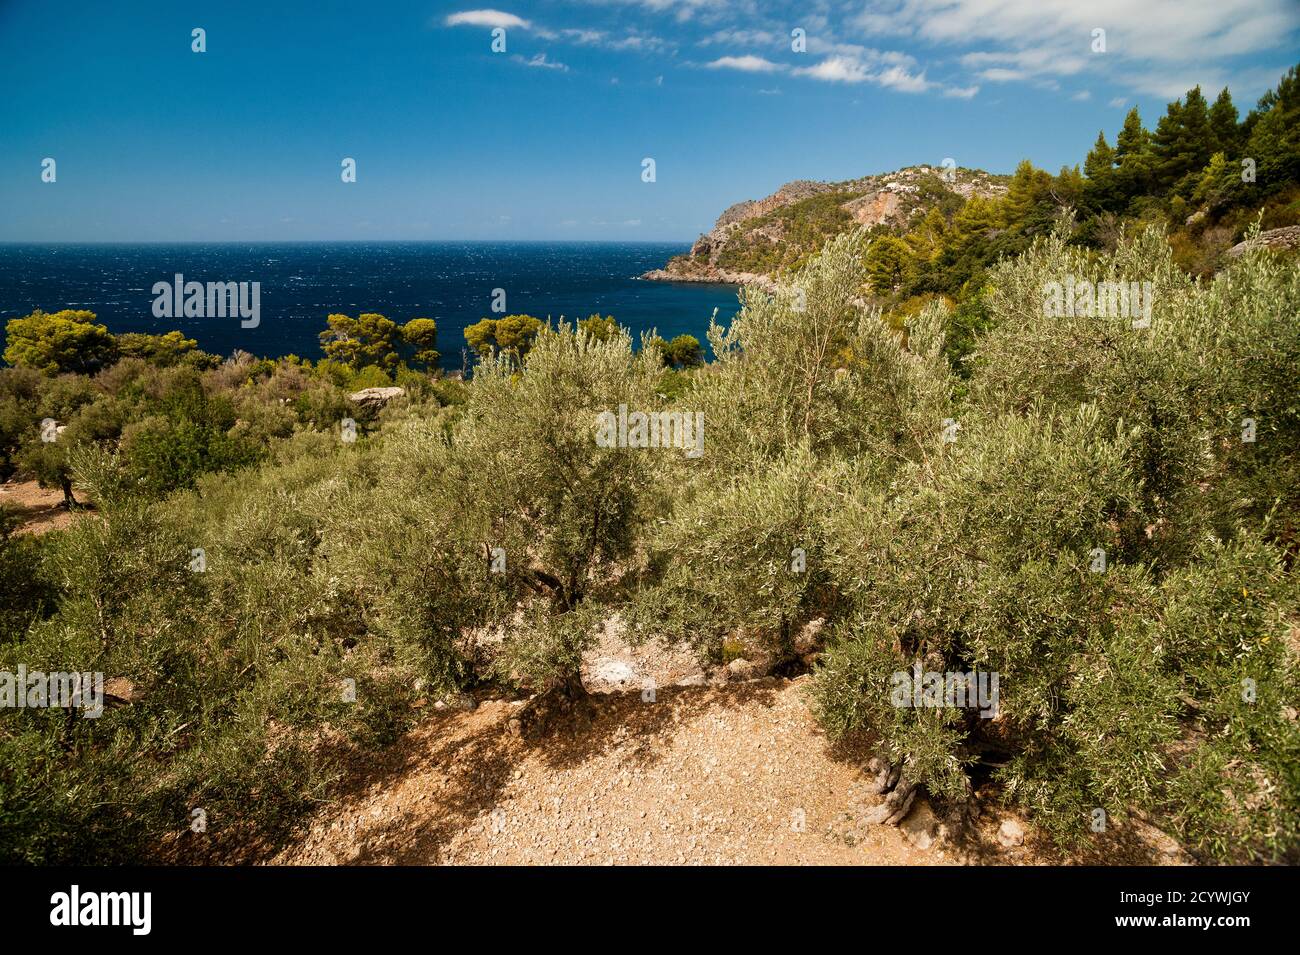 Olivar de Alconásser. Deia. Mallorca.Islas Baleares. España. Stock Photo